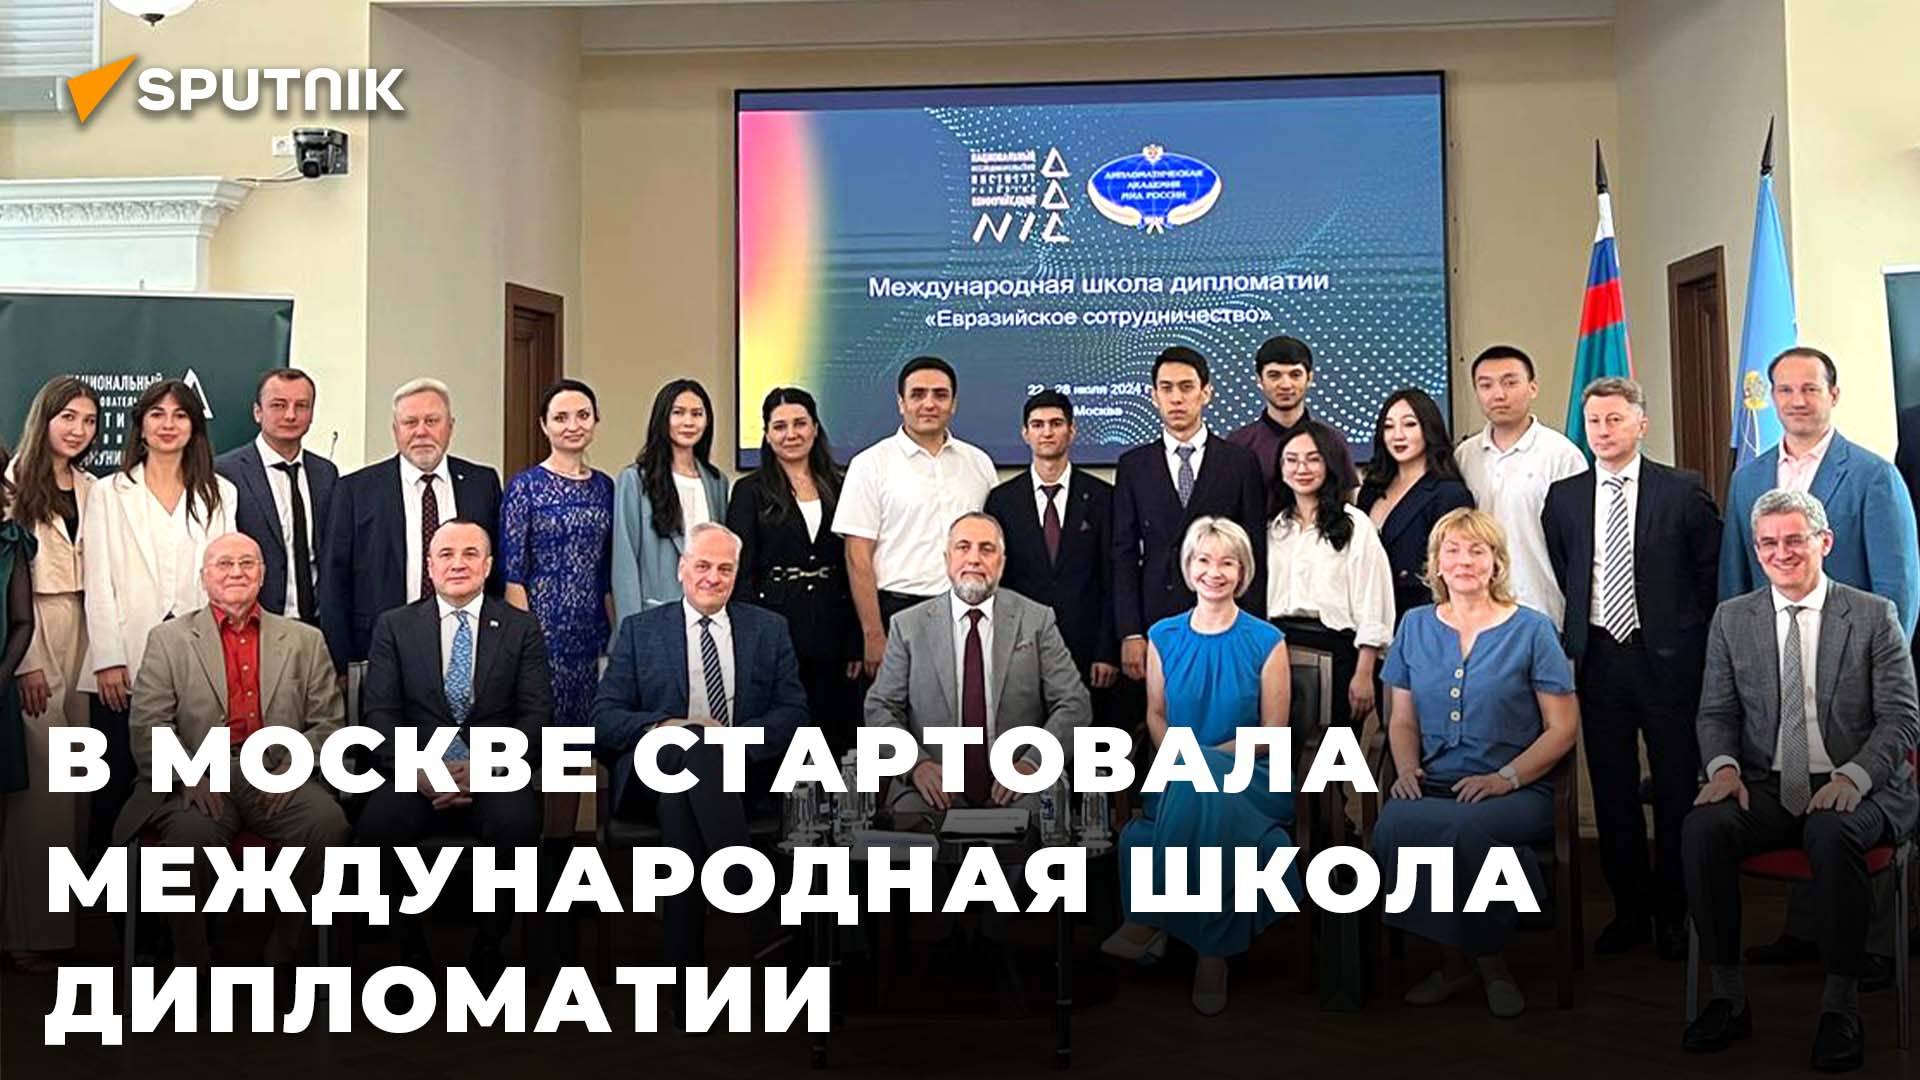 Студенты из Таджикистана и ЦА стали участниками Международной школы дипломатии